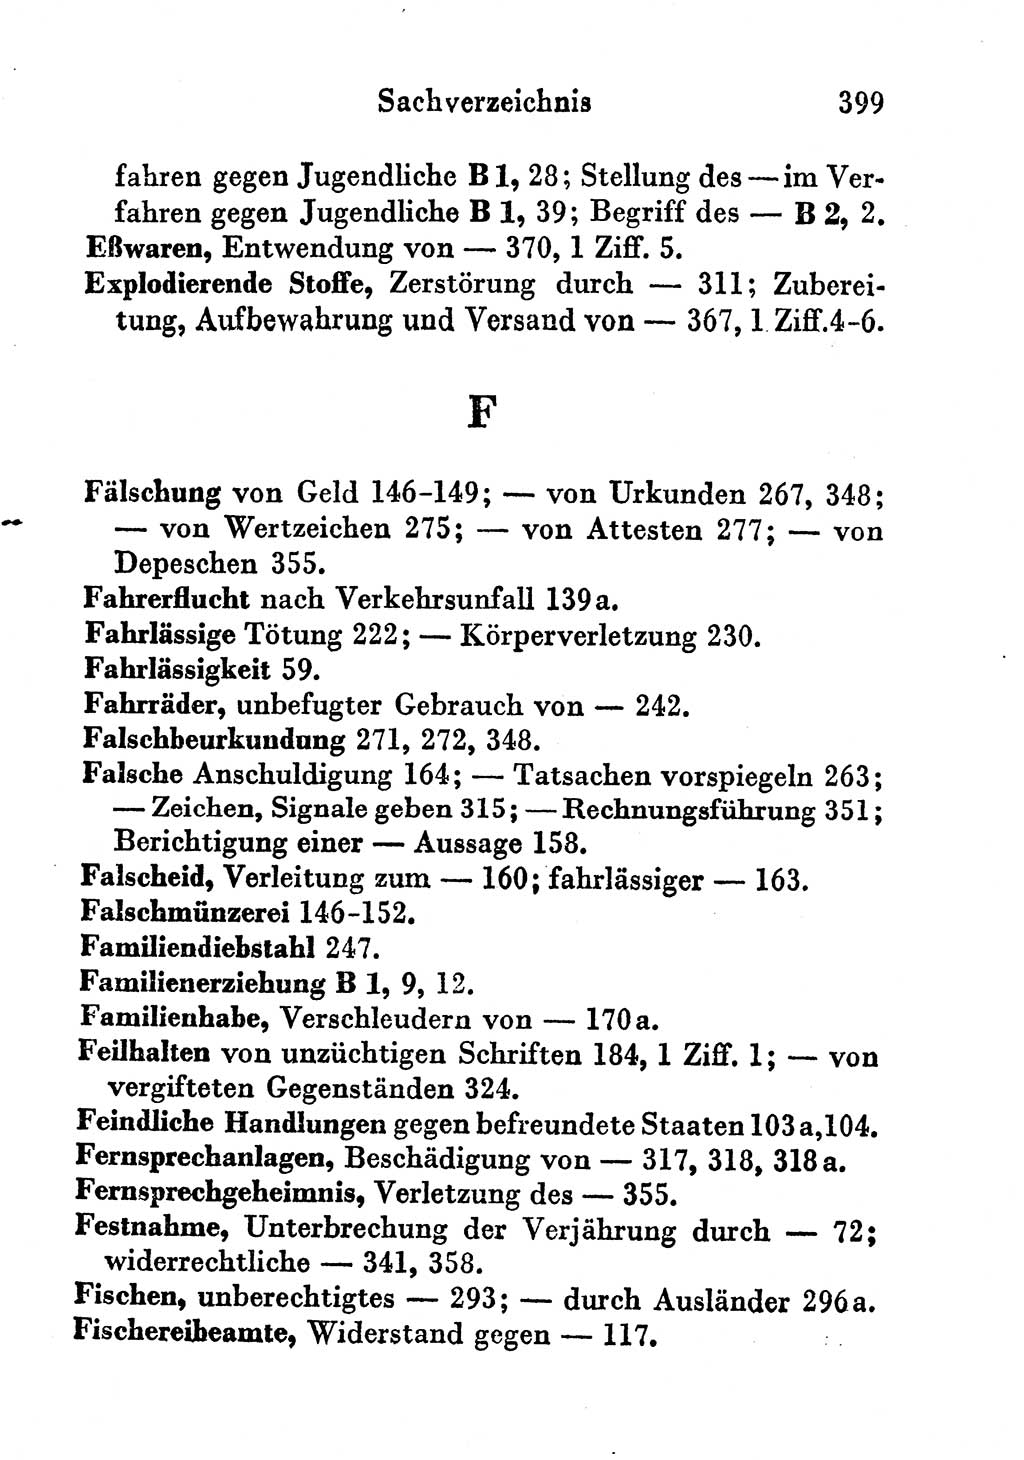 Strafgesetzbuch (StGB) und andere Strafgesetze [Deutsche Demokratische Republik (DDR)] 1956, Seite 399 (StGB Strafges. DDR 1956, S. 399)